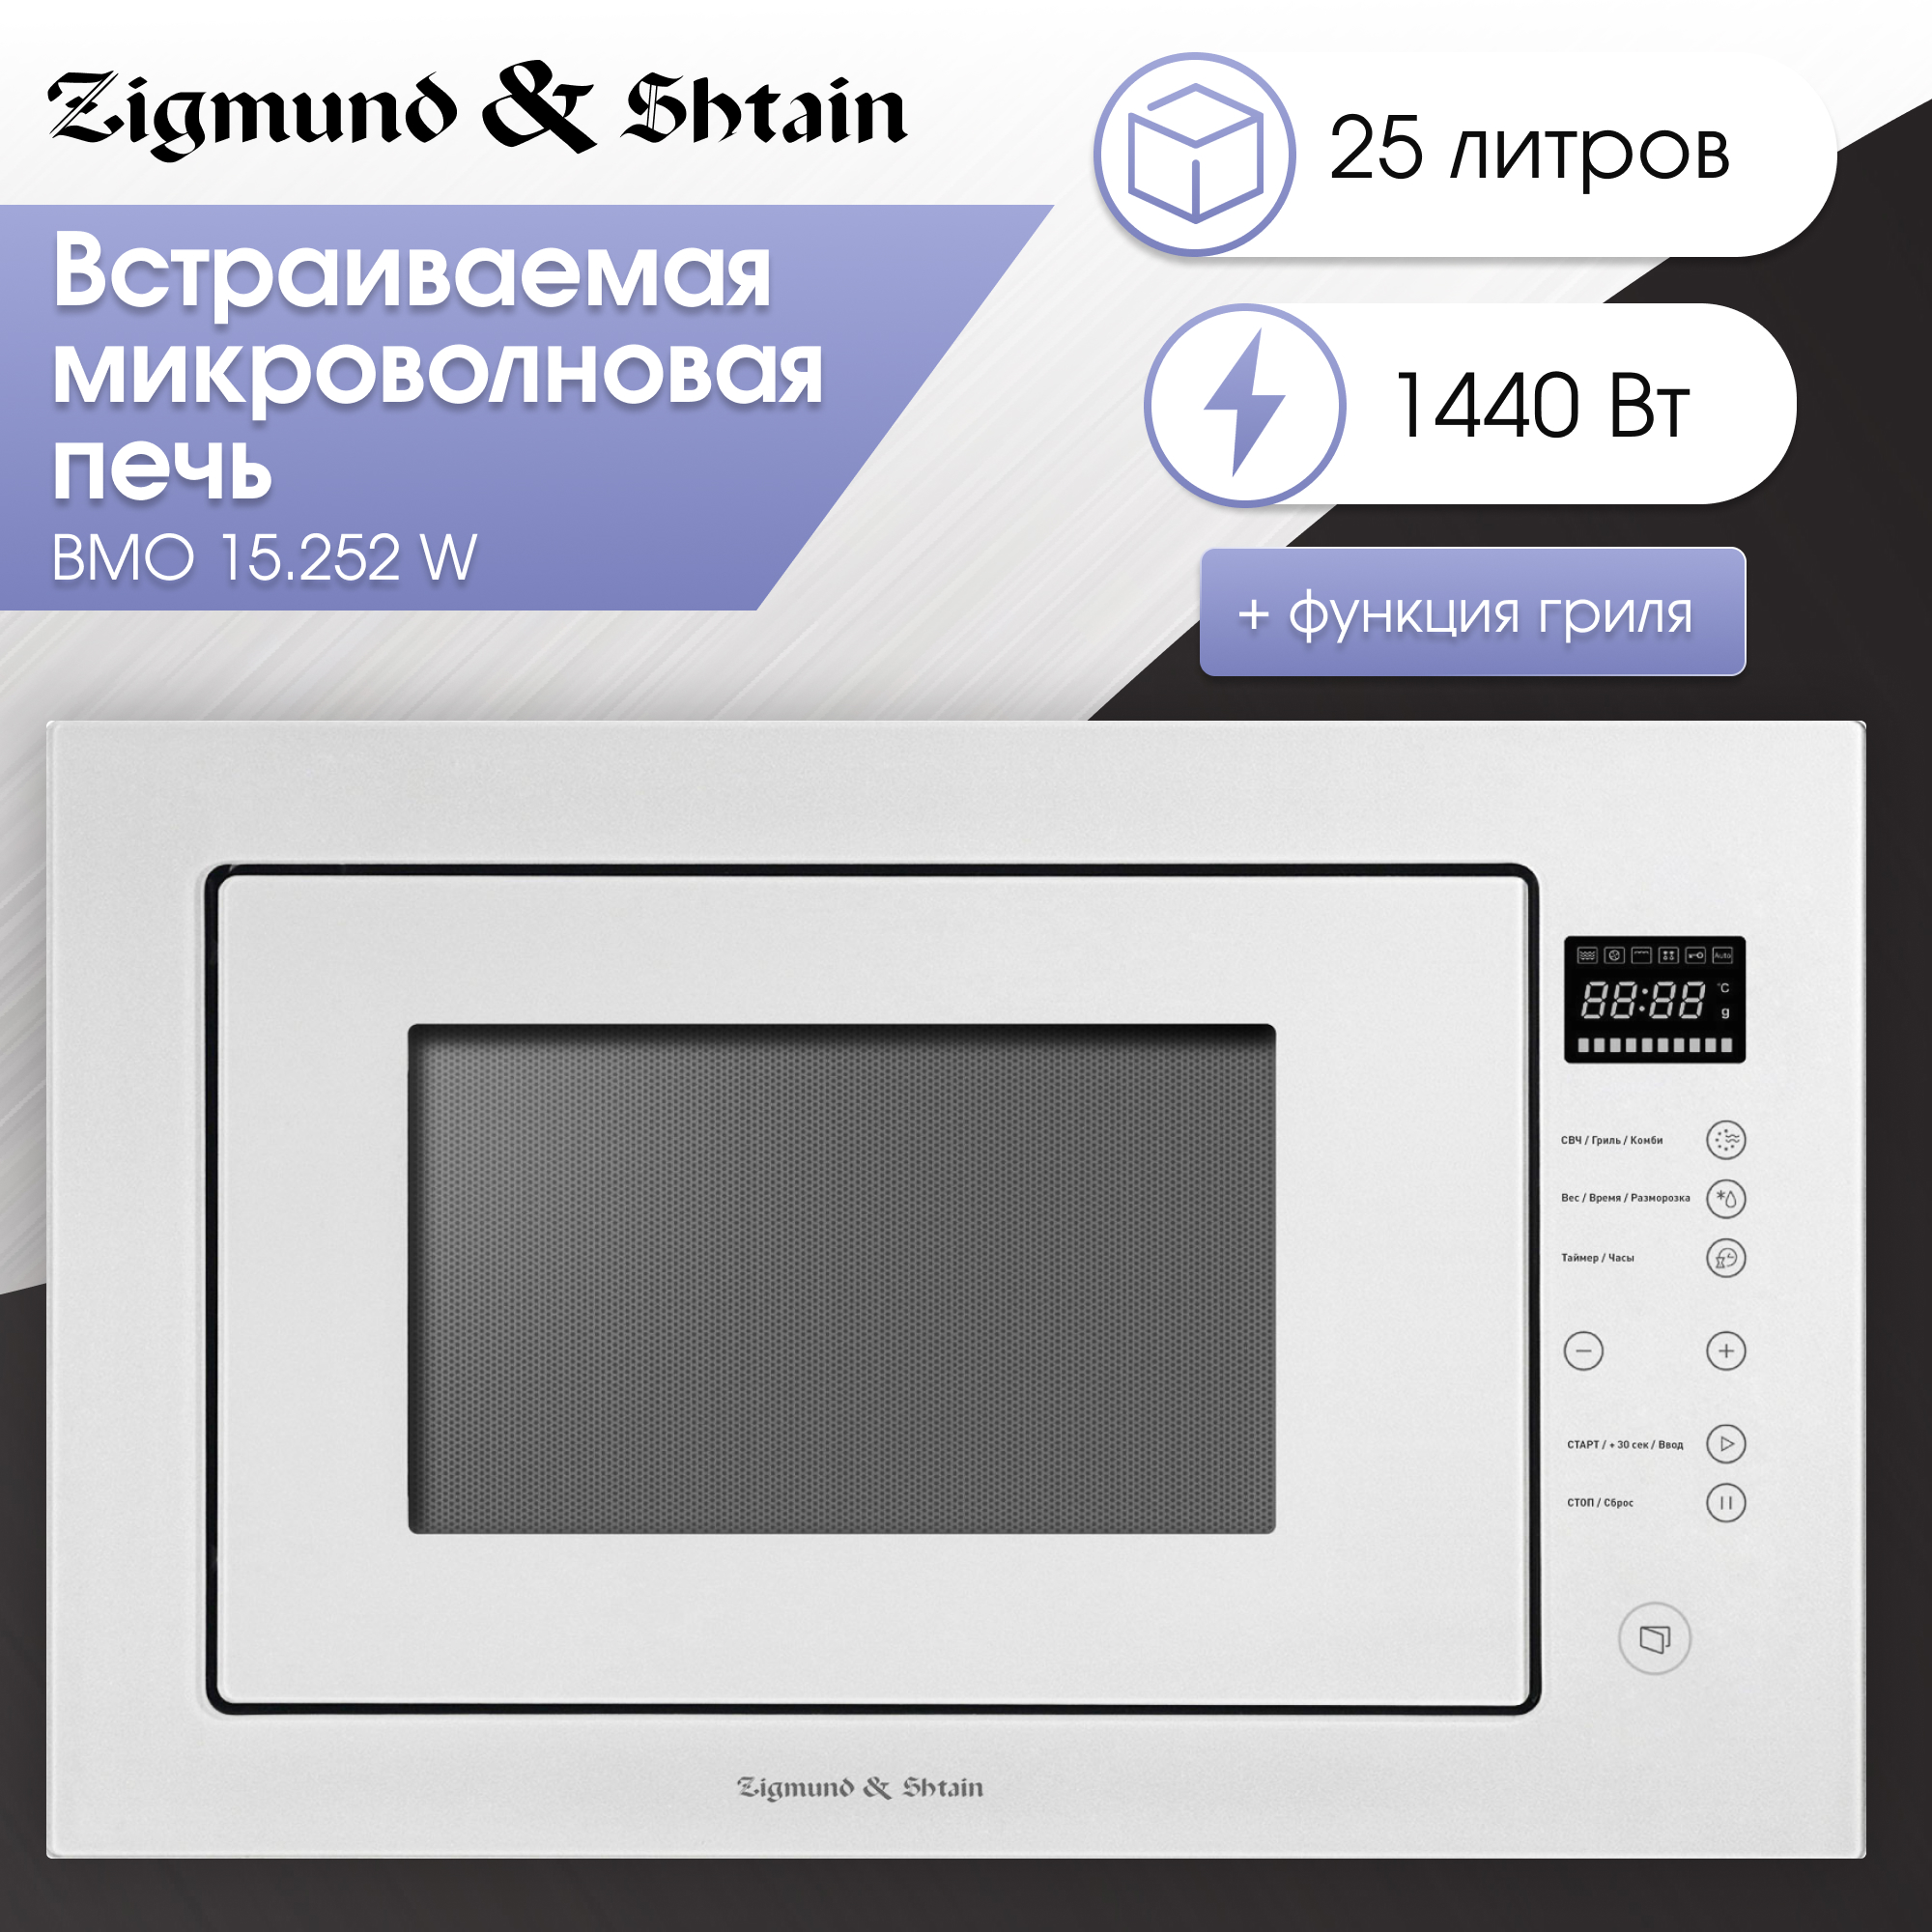 Встраиваемая микроволновая печь Zigmund & Shtain BMO 15.252 W White